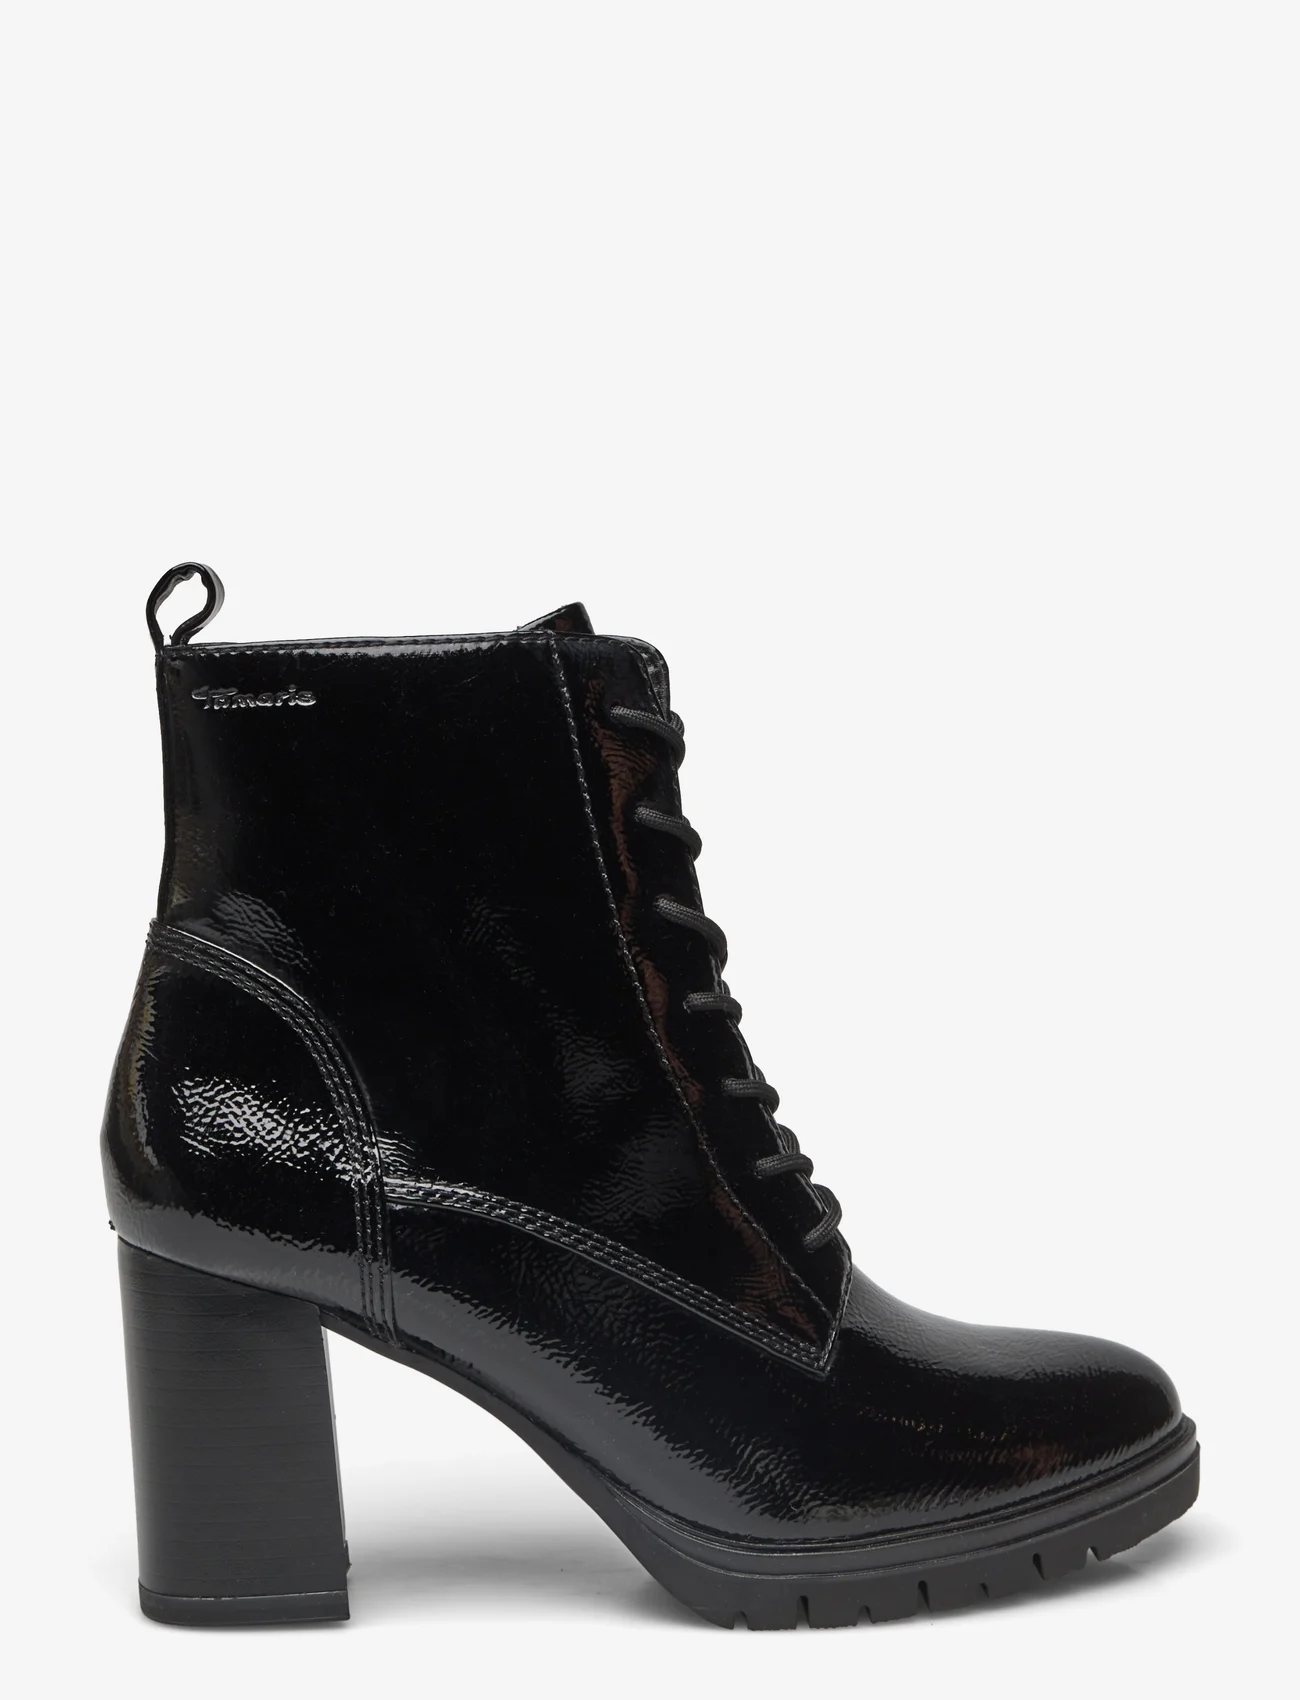 Tamaris - Women Boots - hohe absätze - black patent - 1